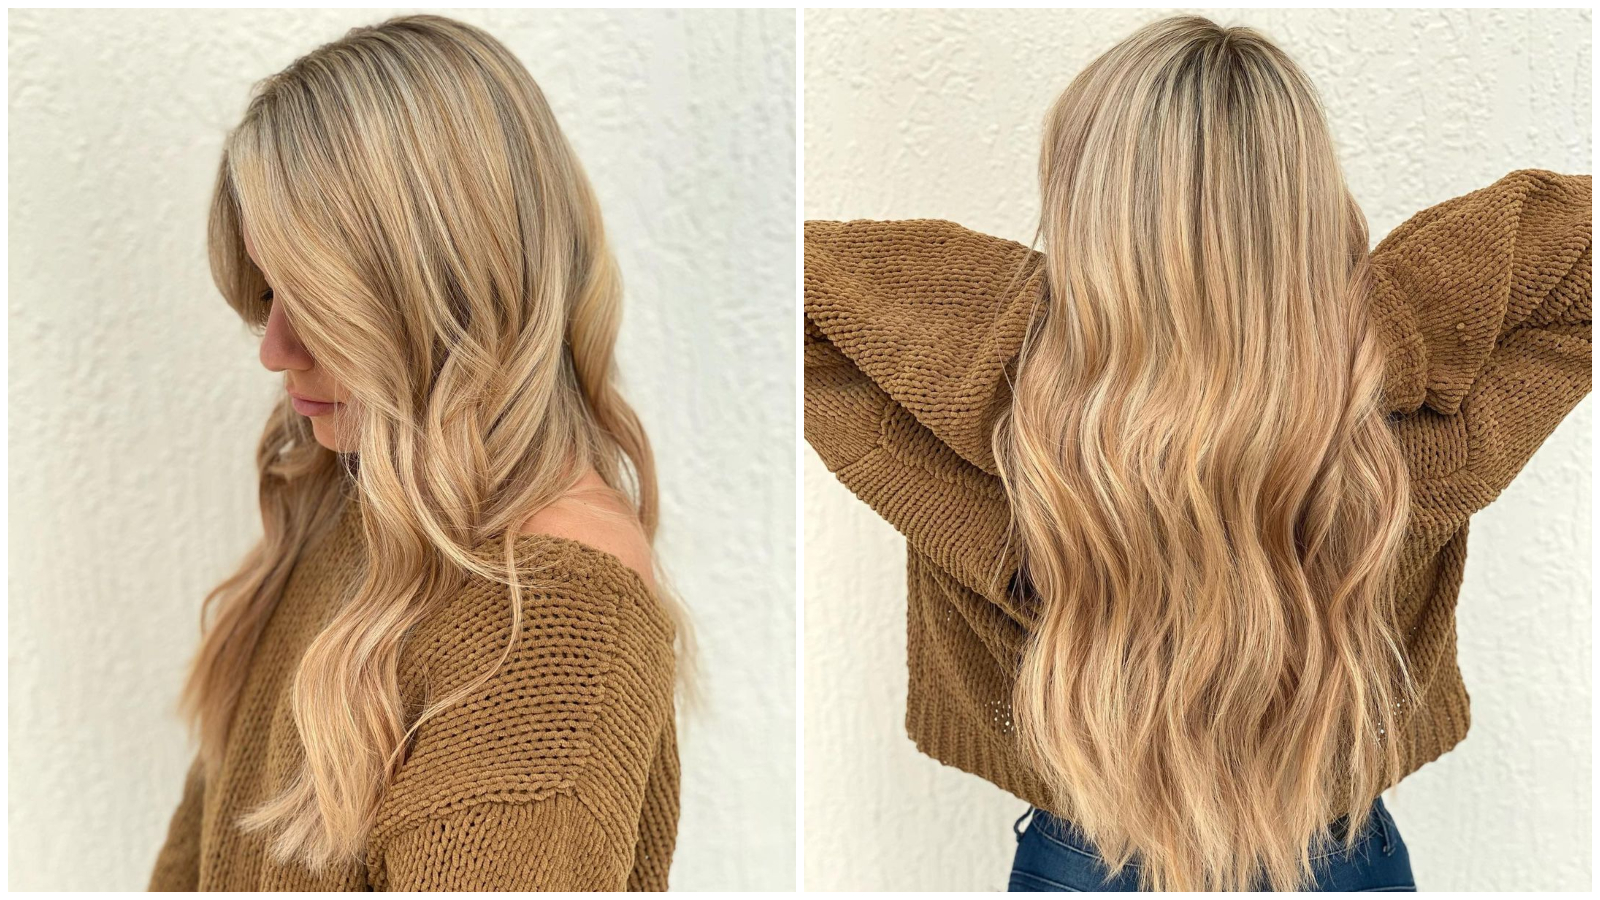 Ako tražite promjenu, 'Buttercream blonde' savršena je proljetna boja kose za osvježavanje cijelog izgleda